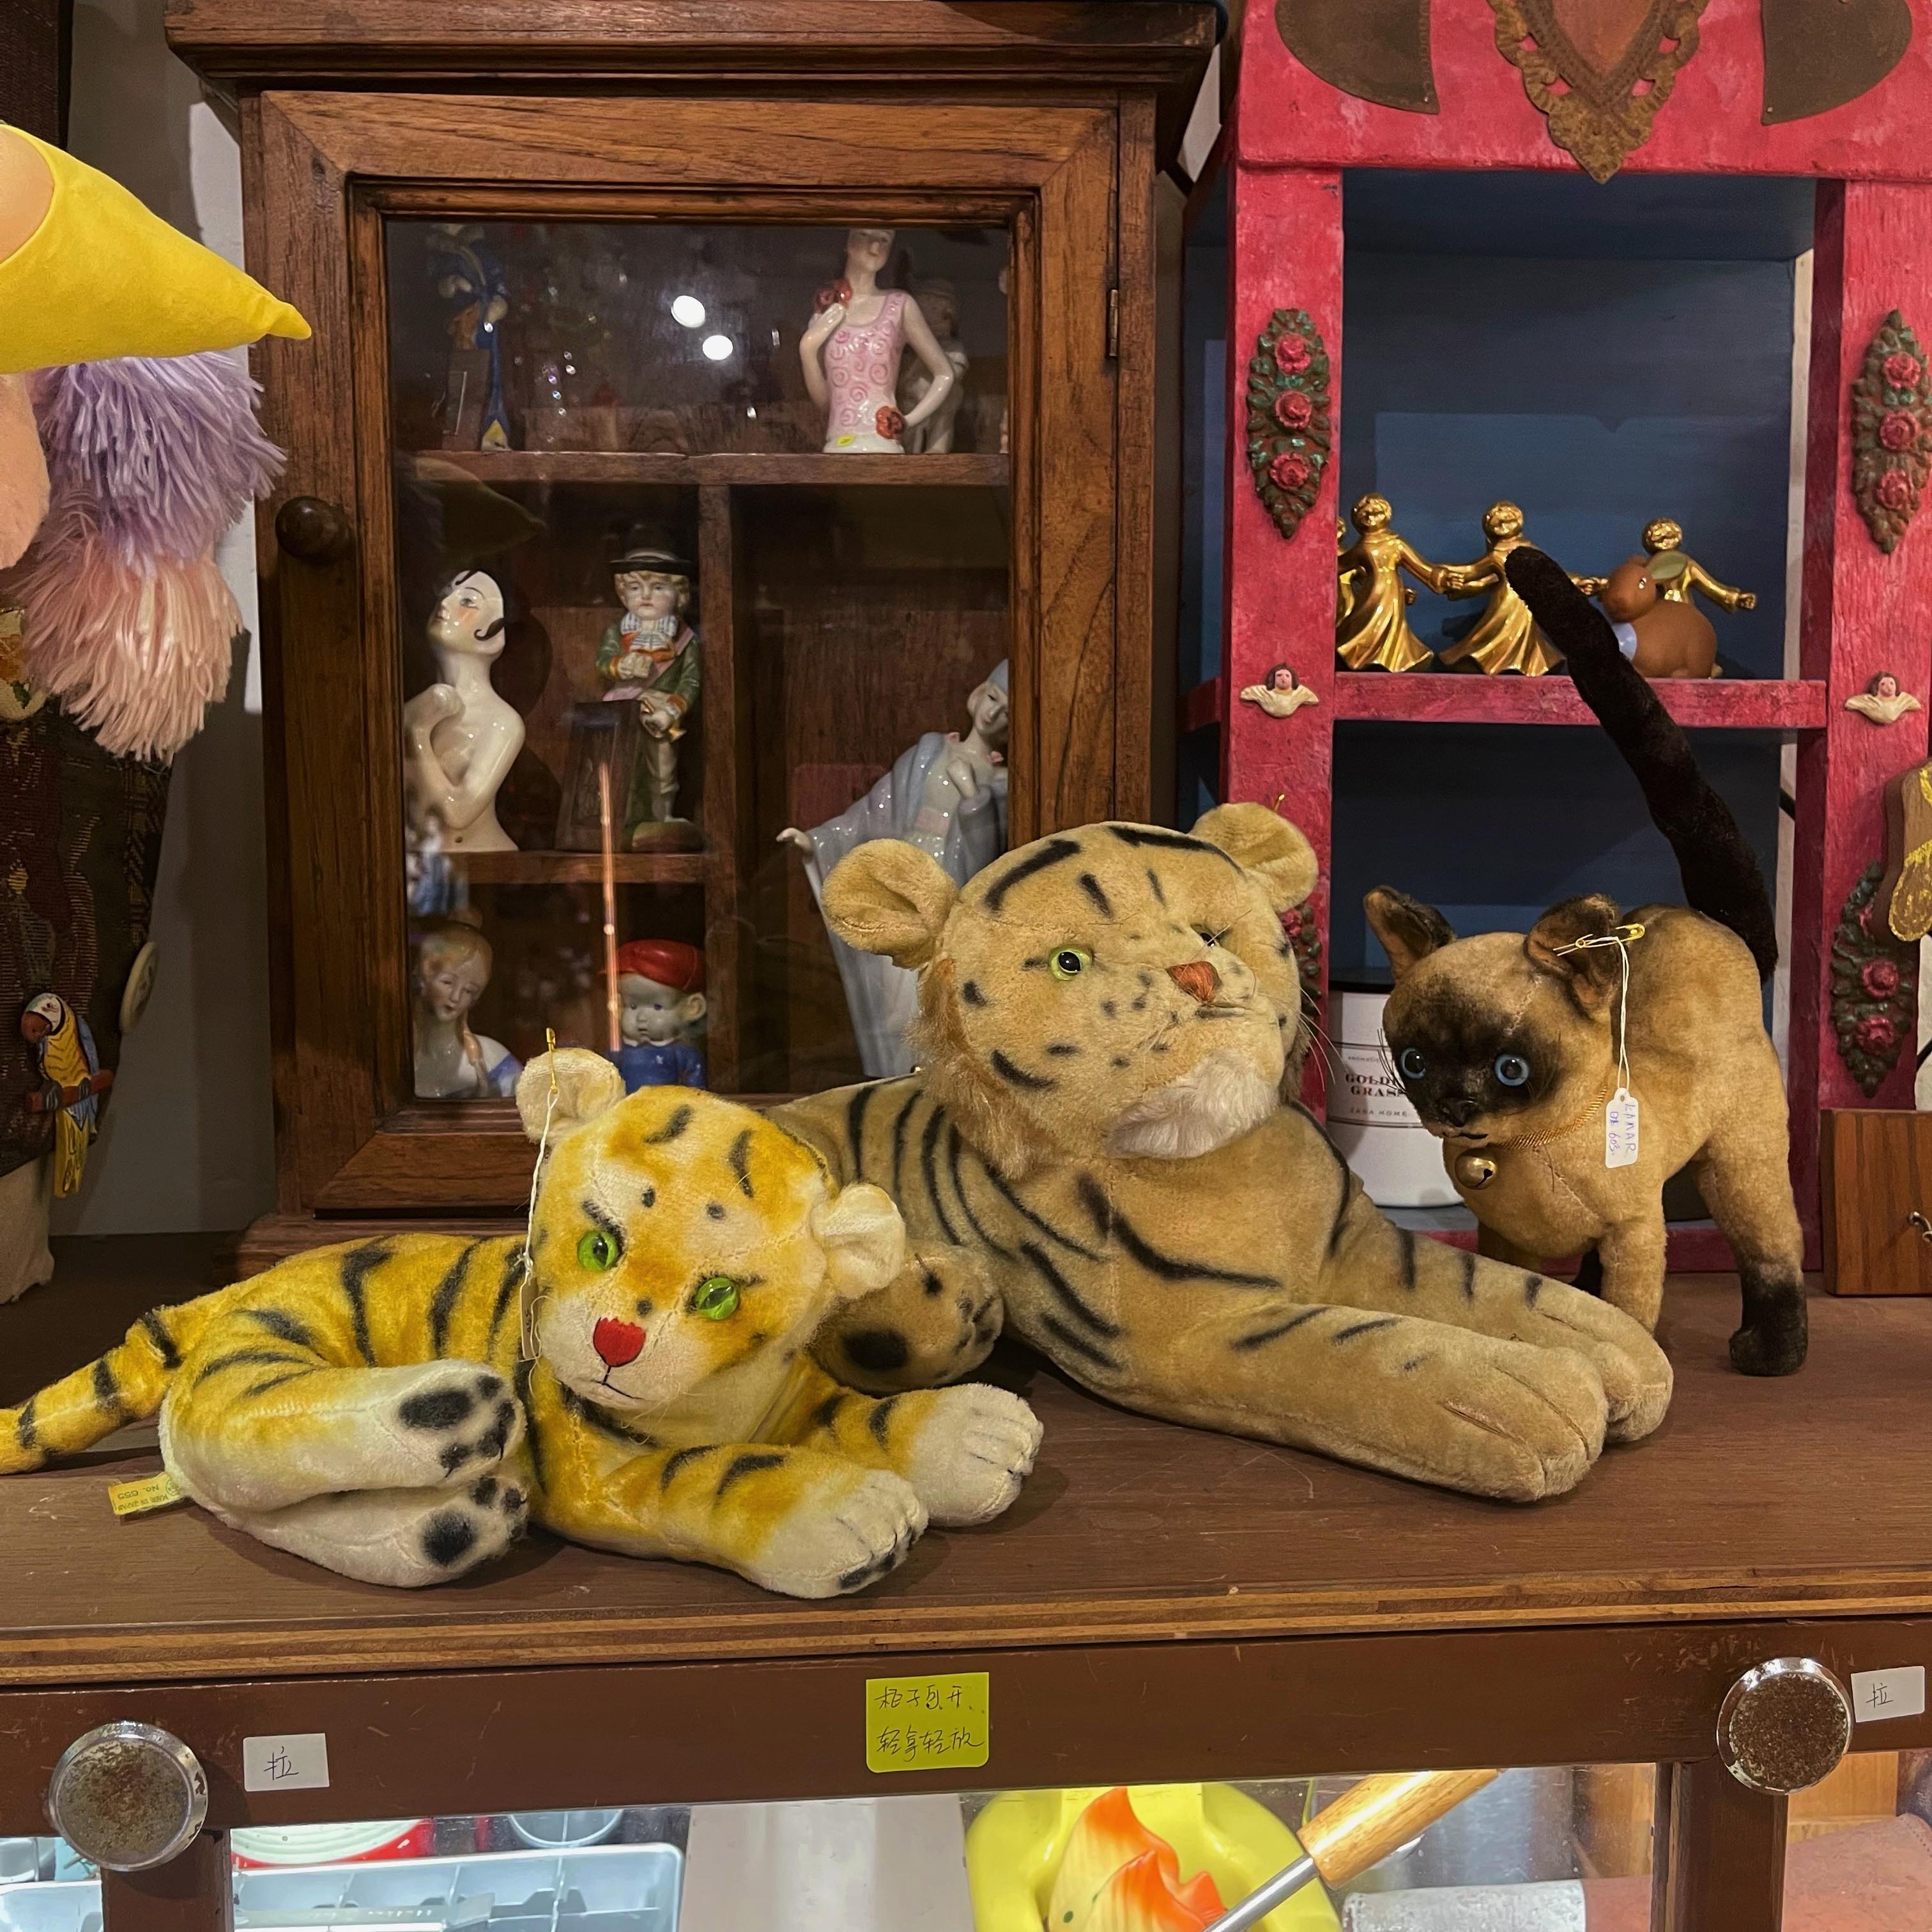 中古玩具古董娃娃steiff老虎猫咪玻璃眼睛德国日本多款选50年代